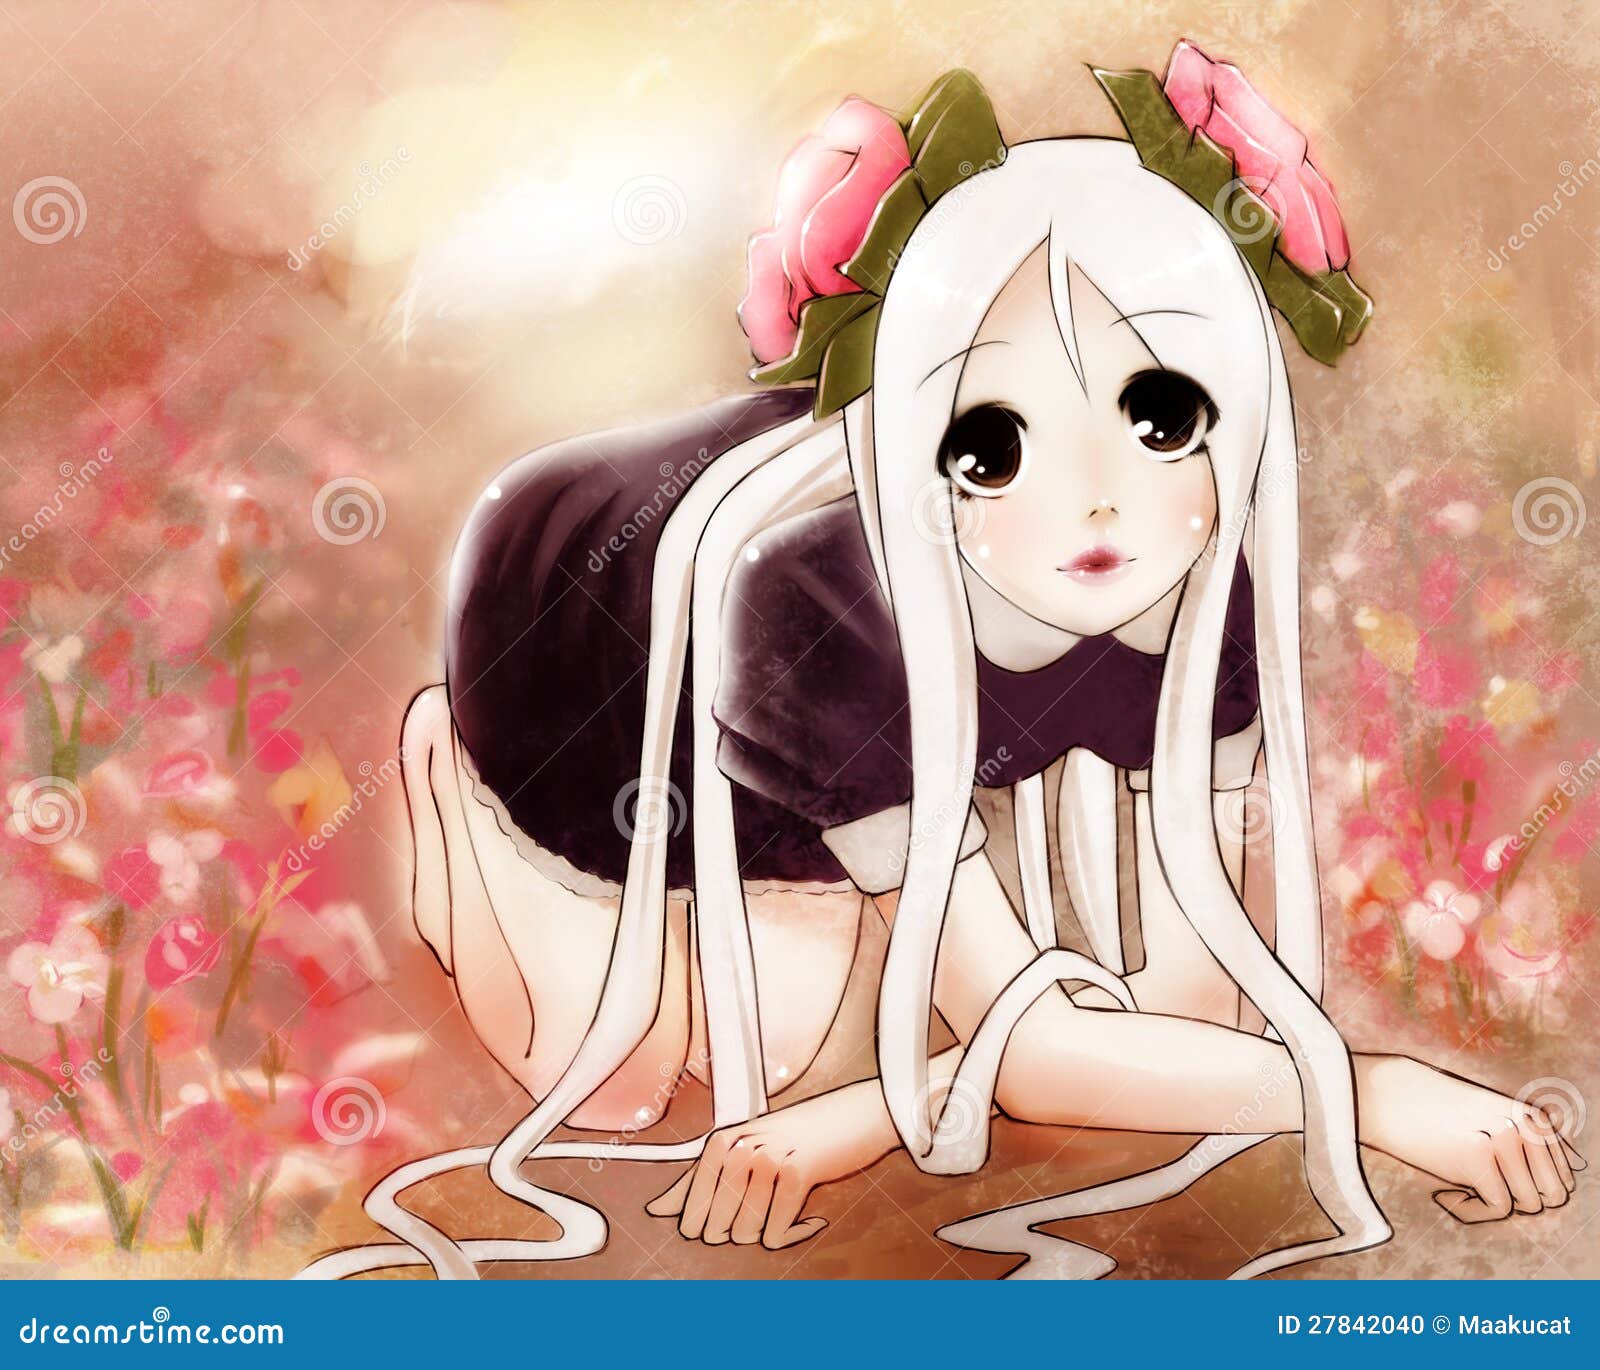 Hair Anime Style Stock Illustrations – 6,489 Hair Anime Style Stock  Illustrations, Vectors & Clipart - Dreamstime